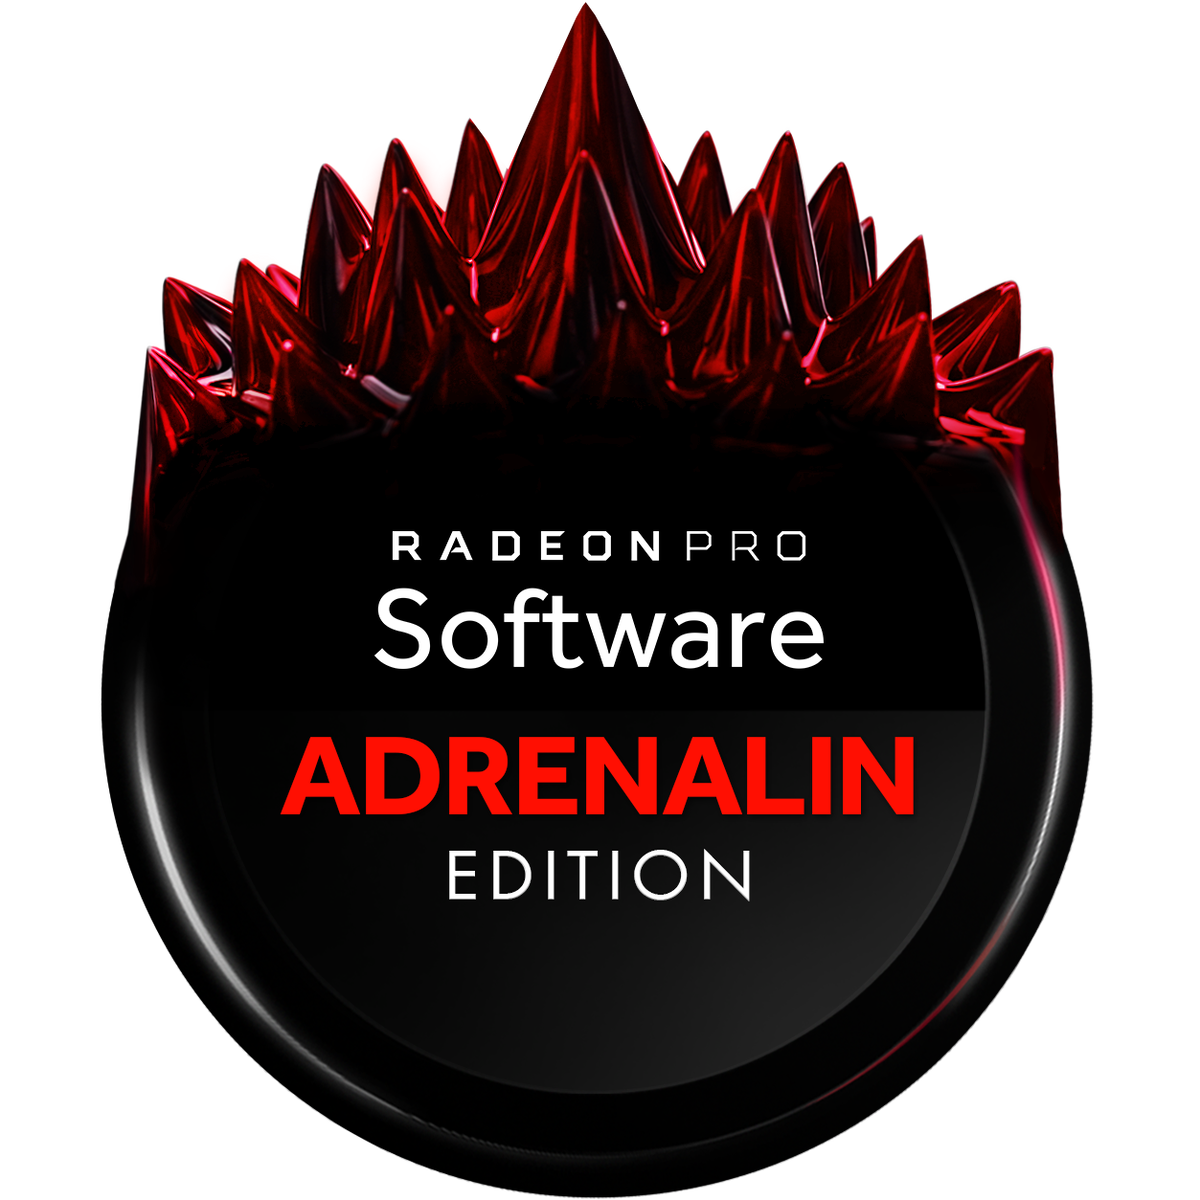 Adrenalin edition версии